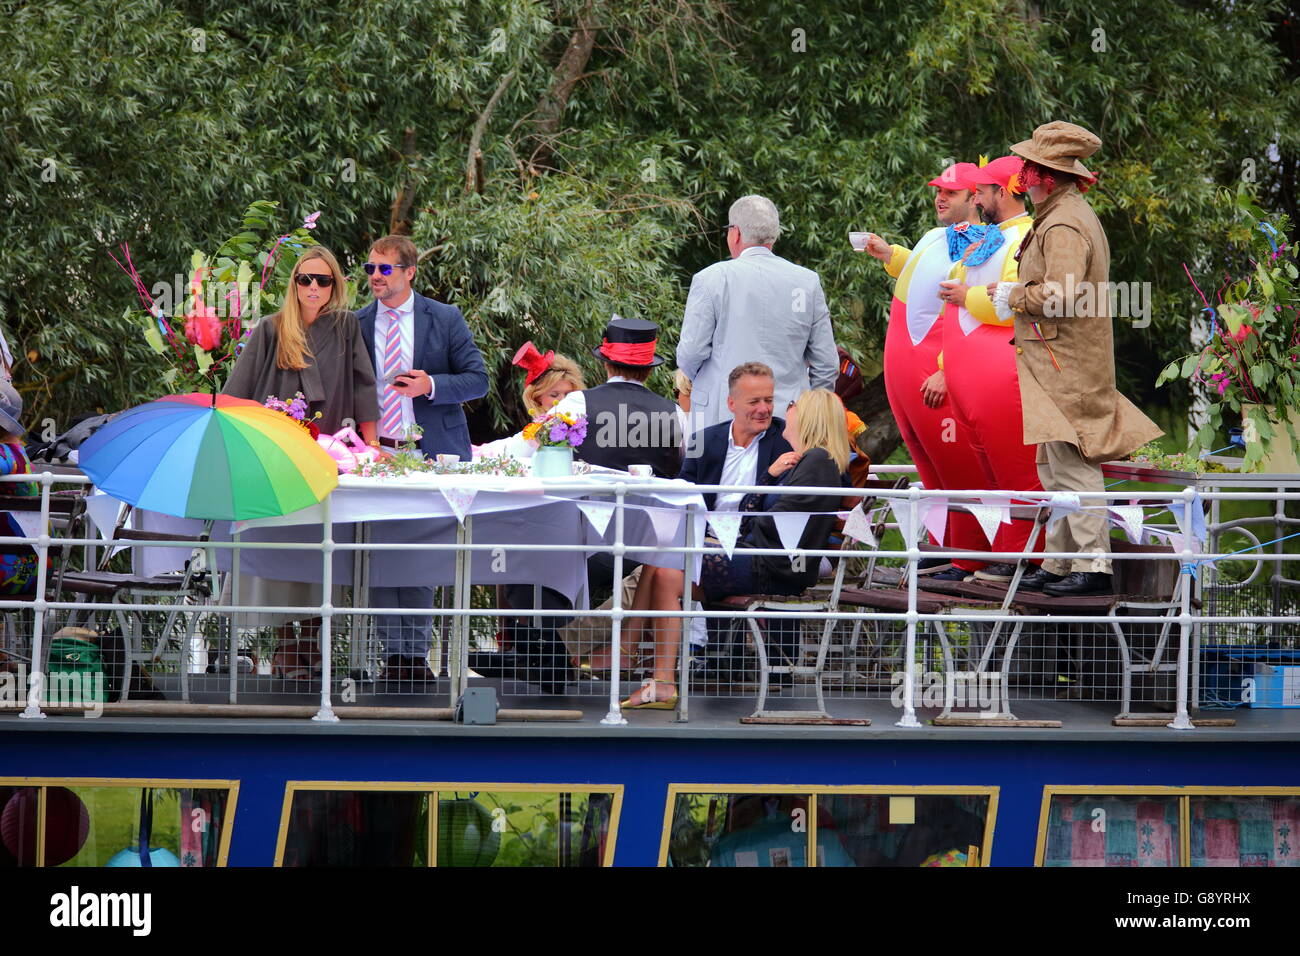 Ruderer aus der ganzen Welt kamen zu den jährlichen Henley Royal Regatta 2016. Zuschauer beobachten den Wettbewerb von oben auf einem Flussschiff. Stockfoto